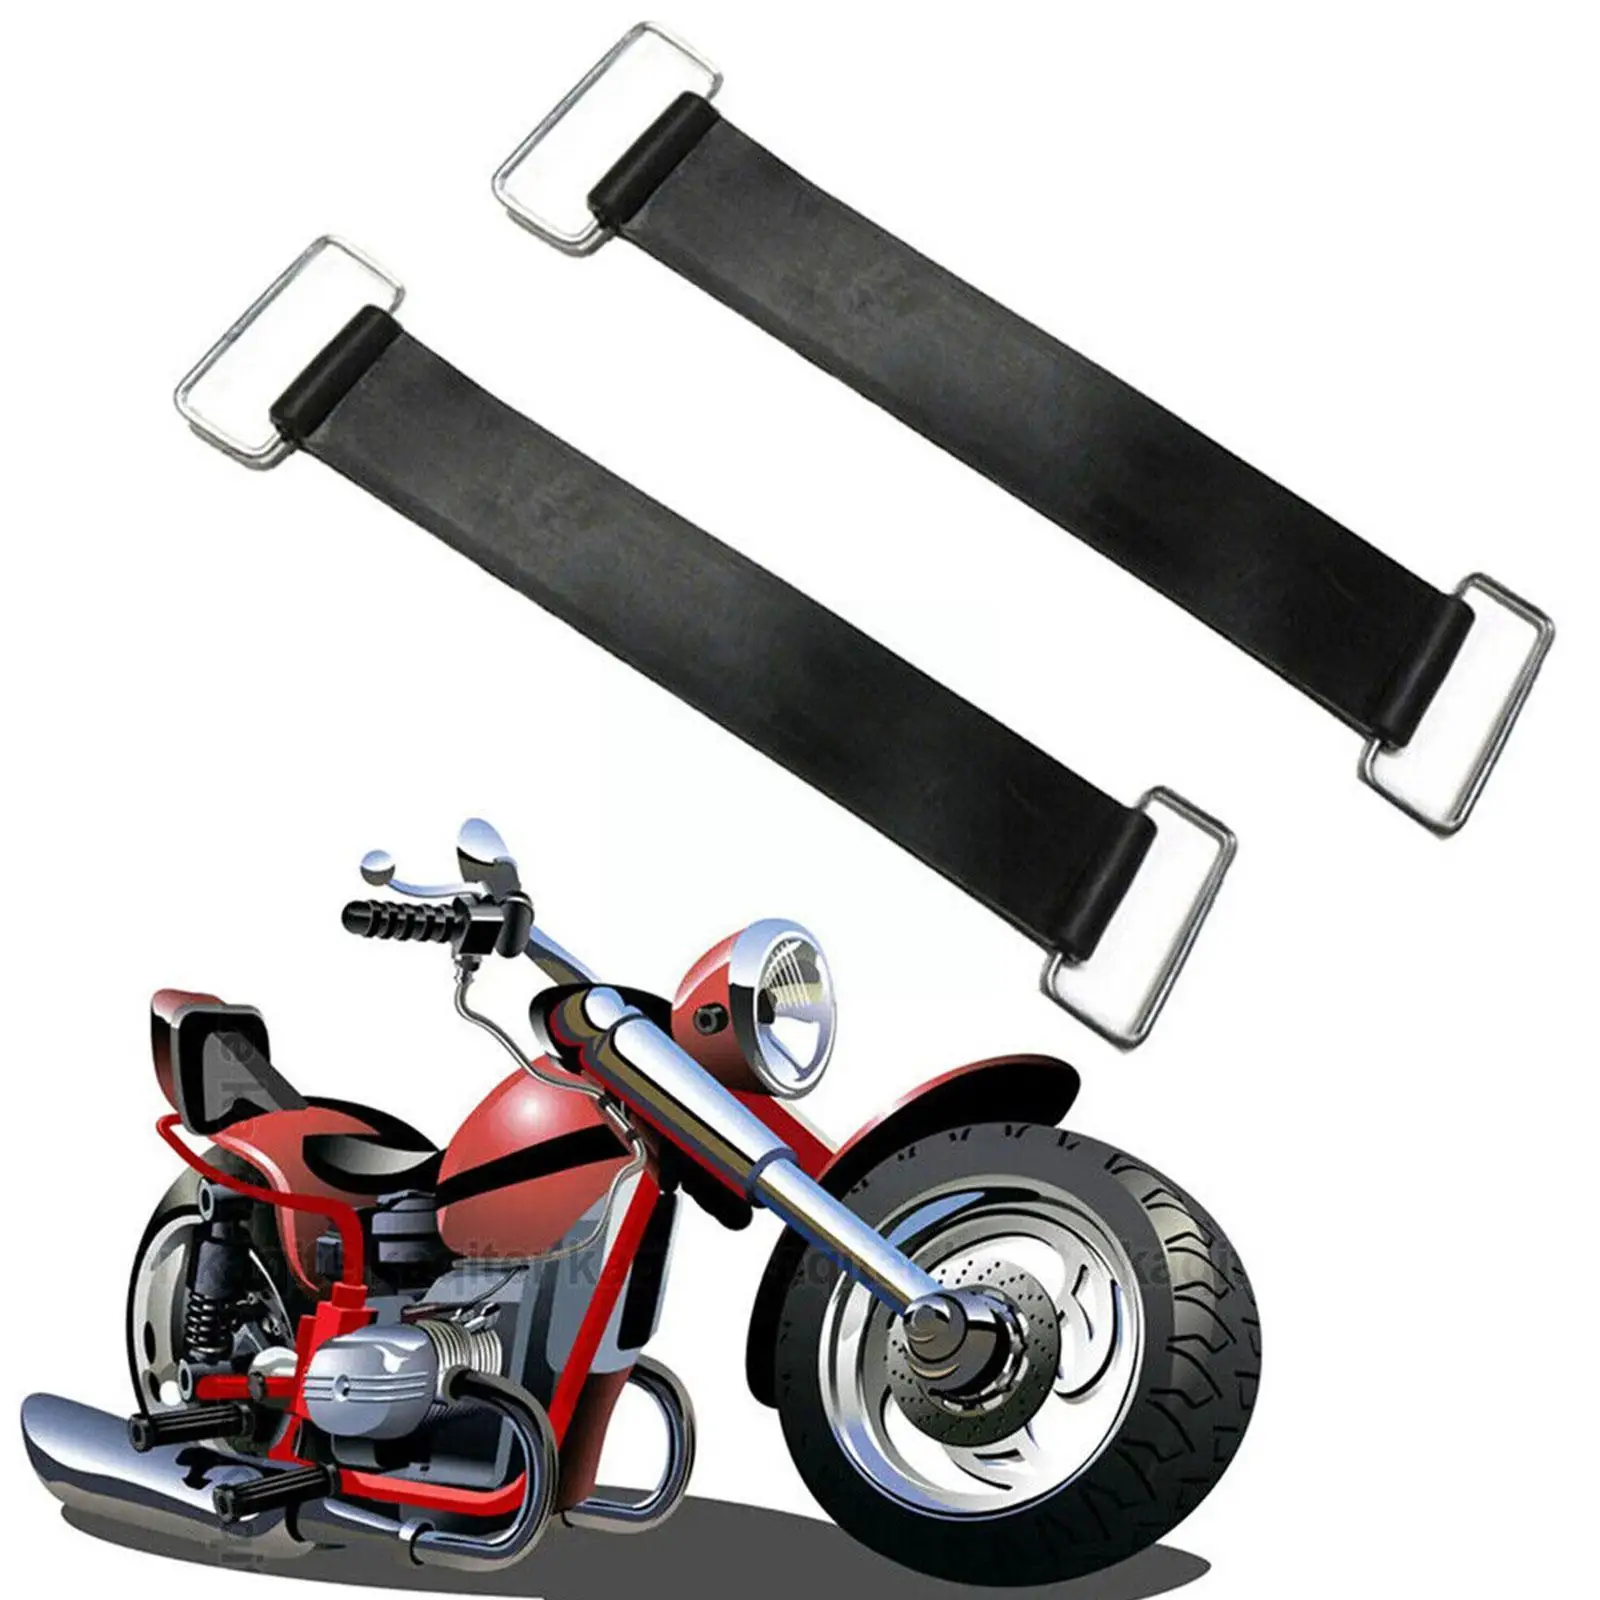 

1 шт. прочный резиновый ремешок для аккумулятора мотоцикла фиксированный держатель эластичный бандажный ремень растягивающийся для 18-23 см V7h8